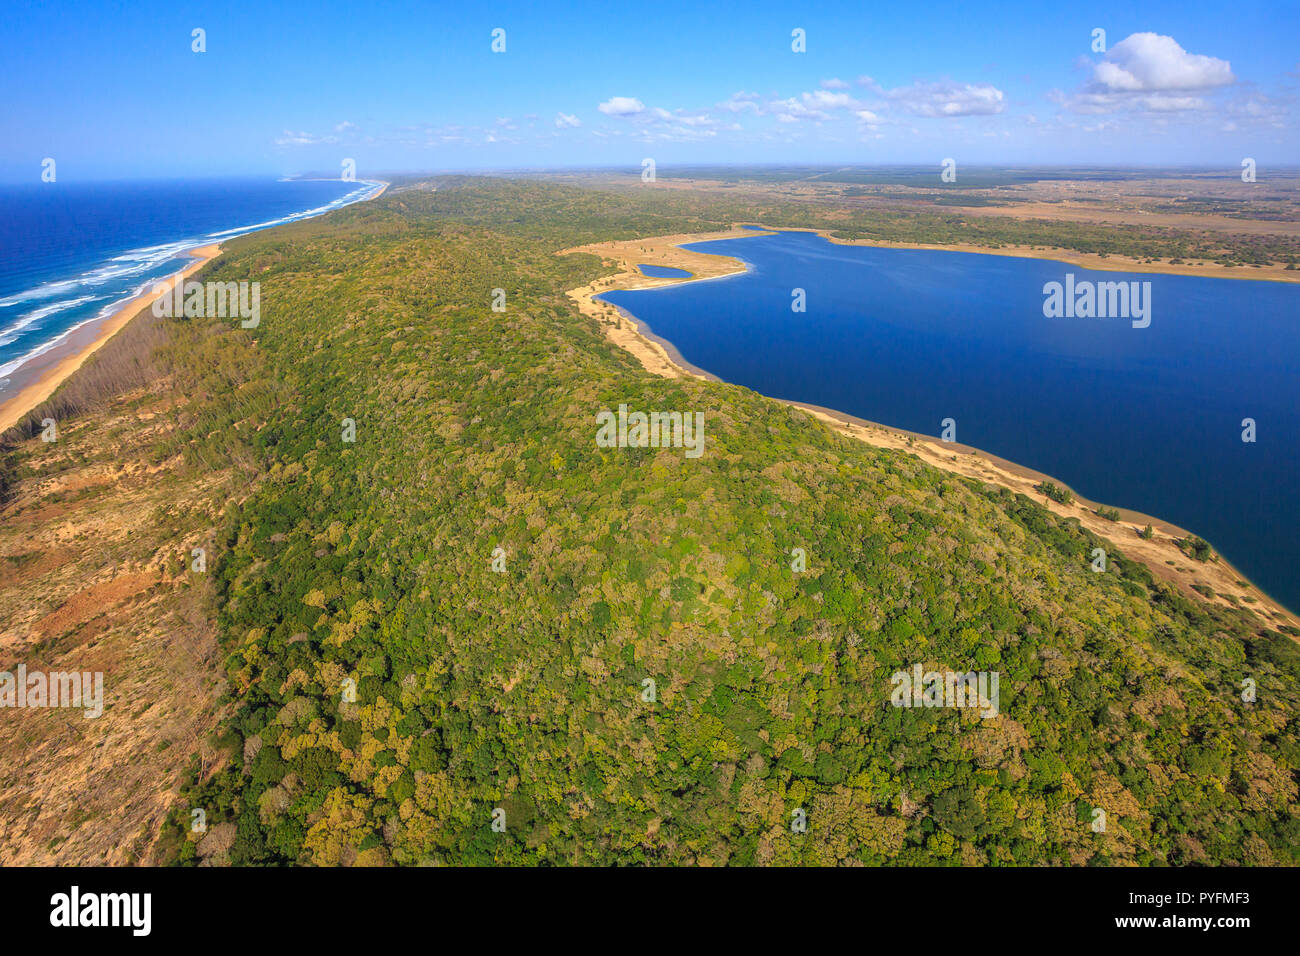 Luftaufnahme von Sodwana Bay National Park innerhalb des iSimangaliso  Wetland Park, Maputaland, einem Gebiet von KwaZulu-Natal an der Ostküste  Südafrikas Stockfotografie - Alamy